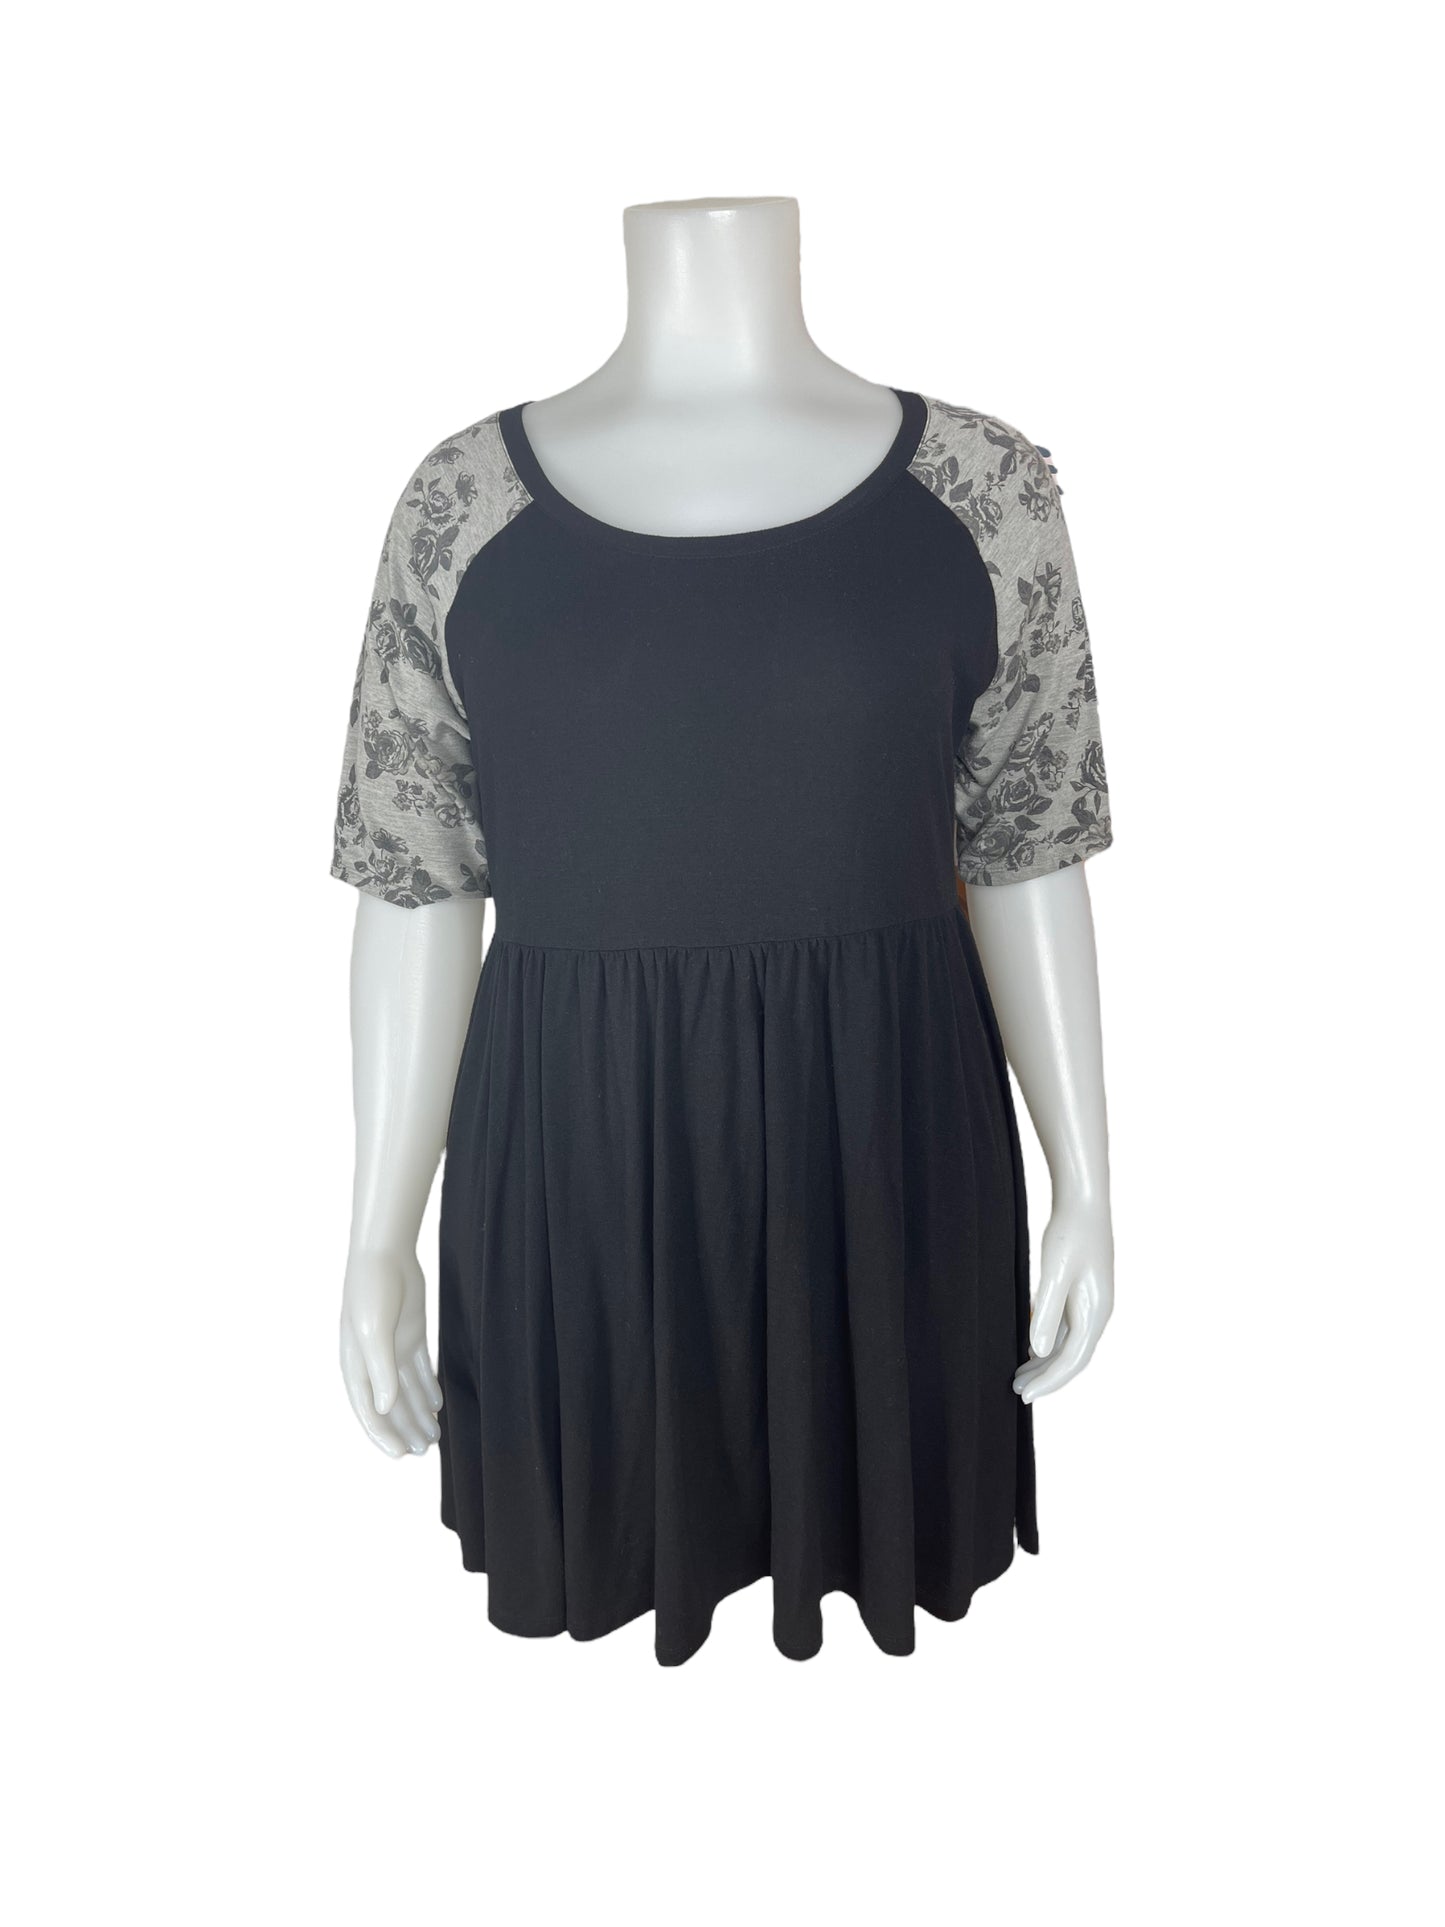 “Torrid” Black Dress w/ Grey Floral 3/4 Sleeves (3)